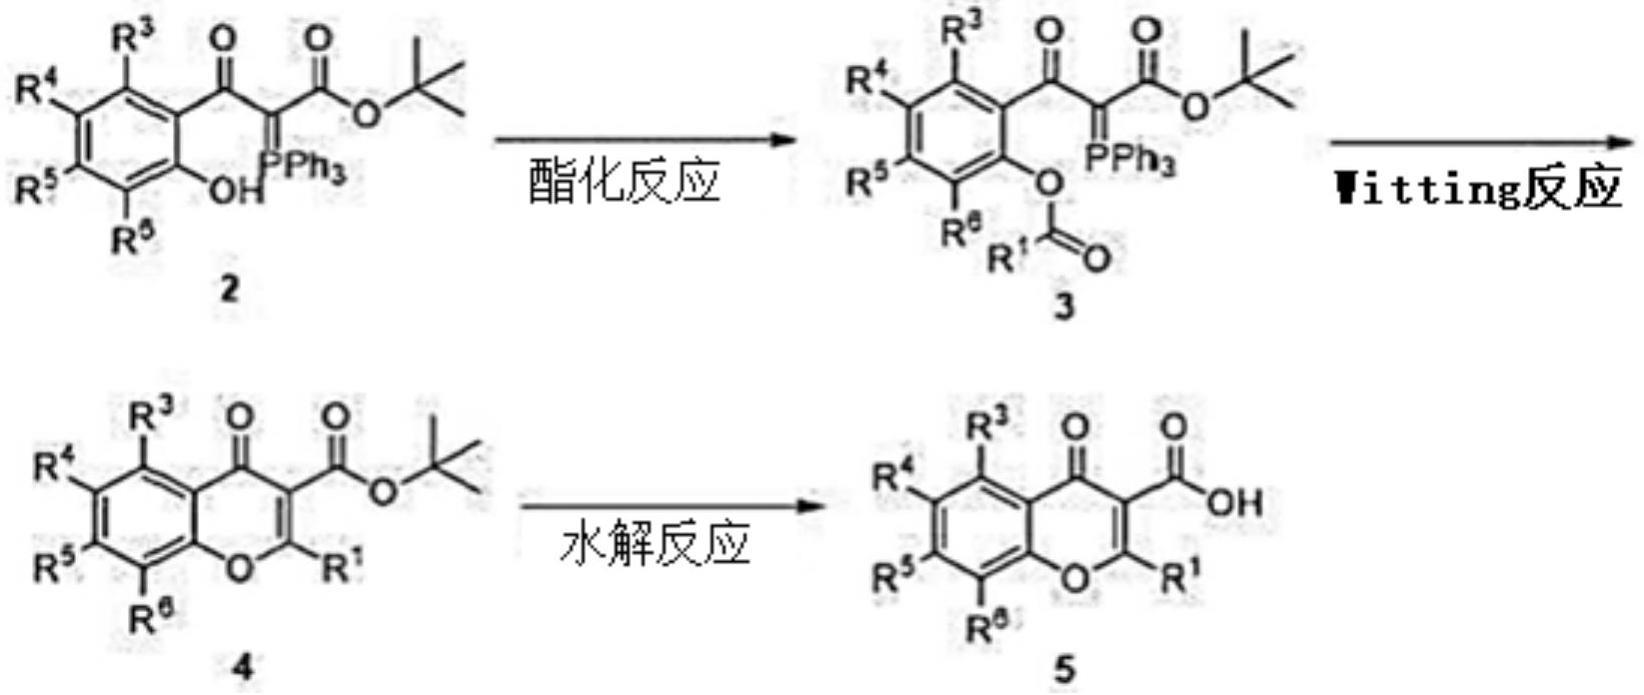 苯并吡喃酮化合物的制造方法及用于其的新型的中间体与流程